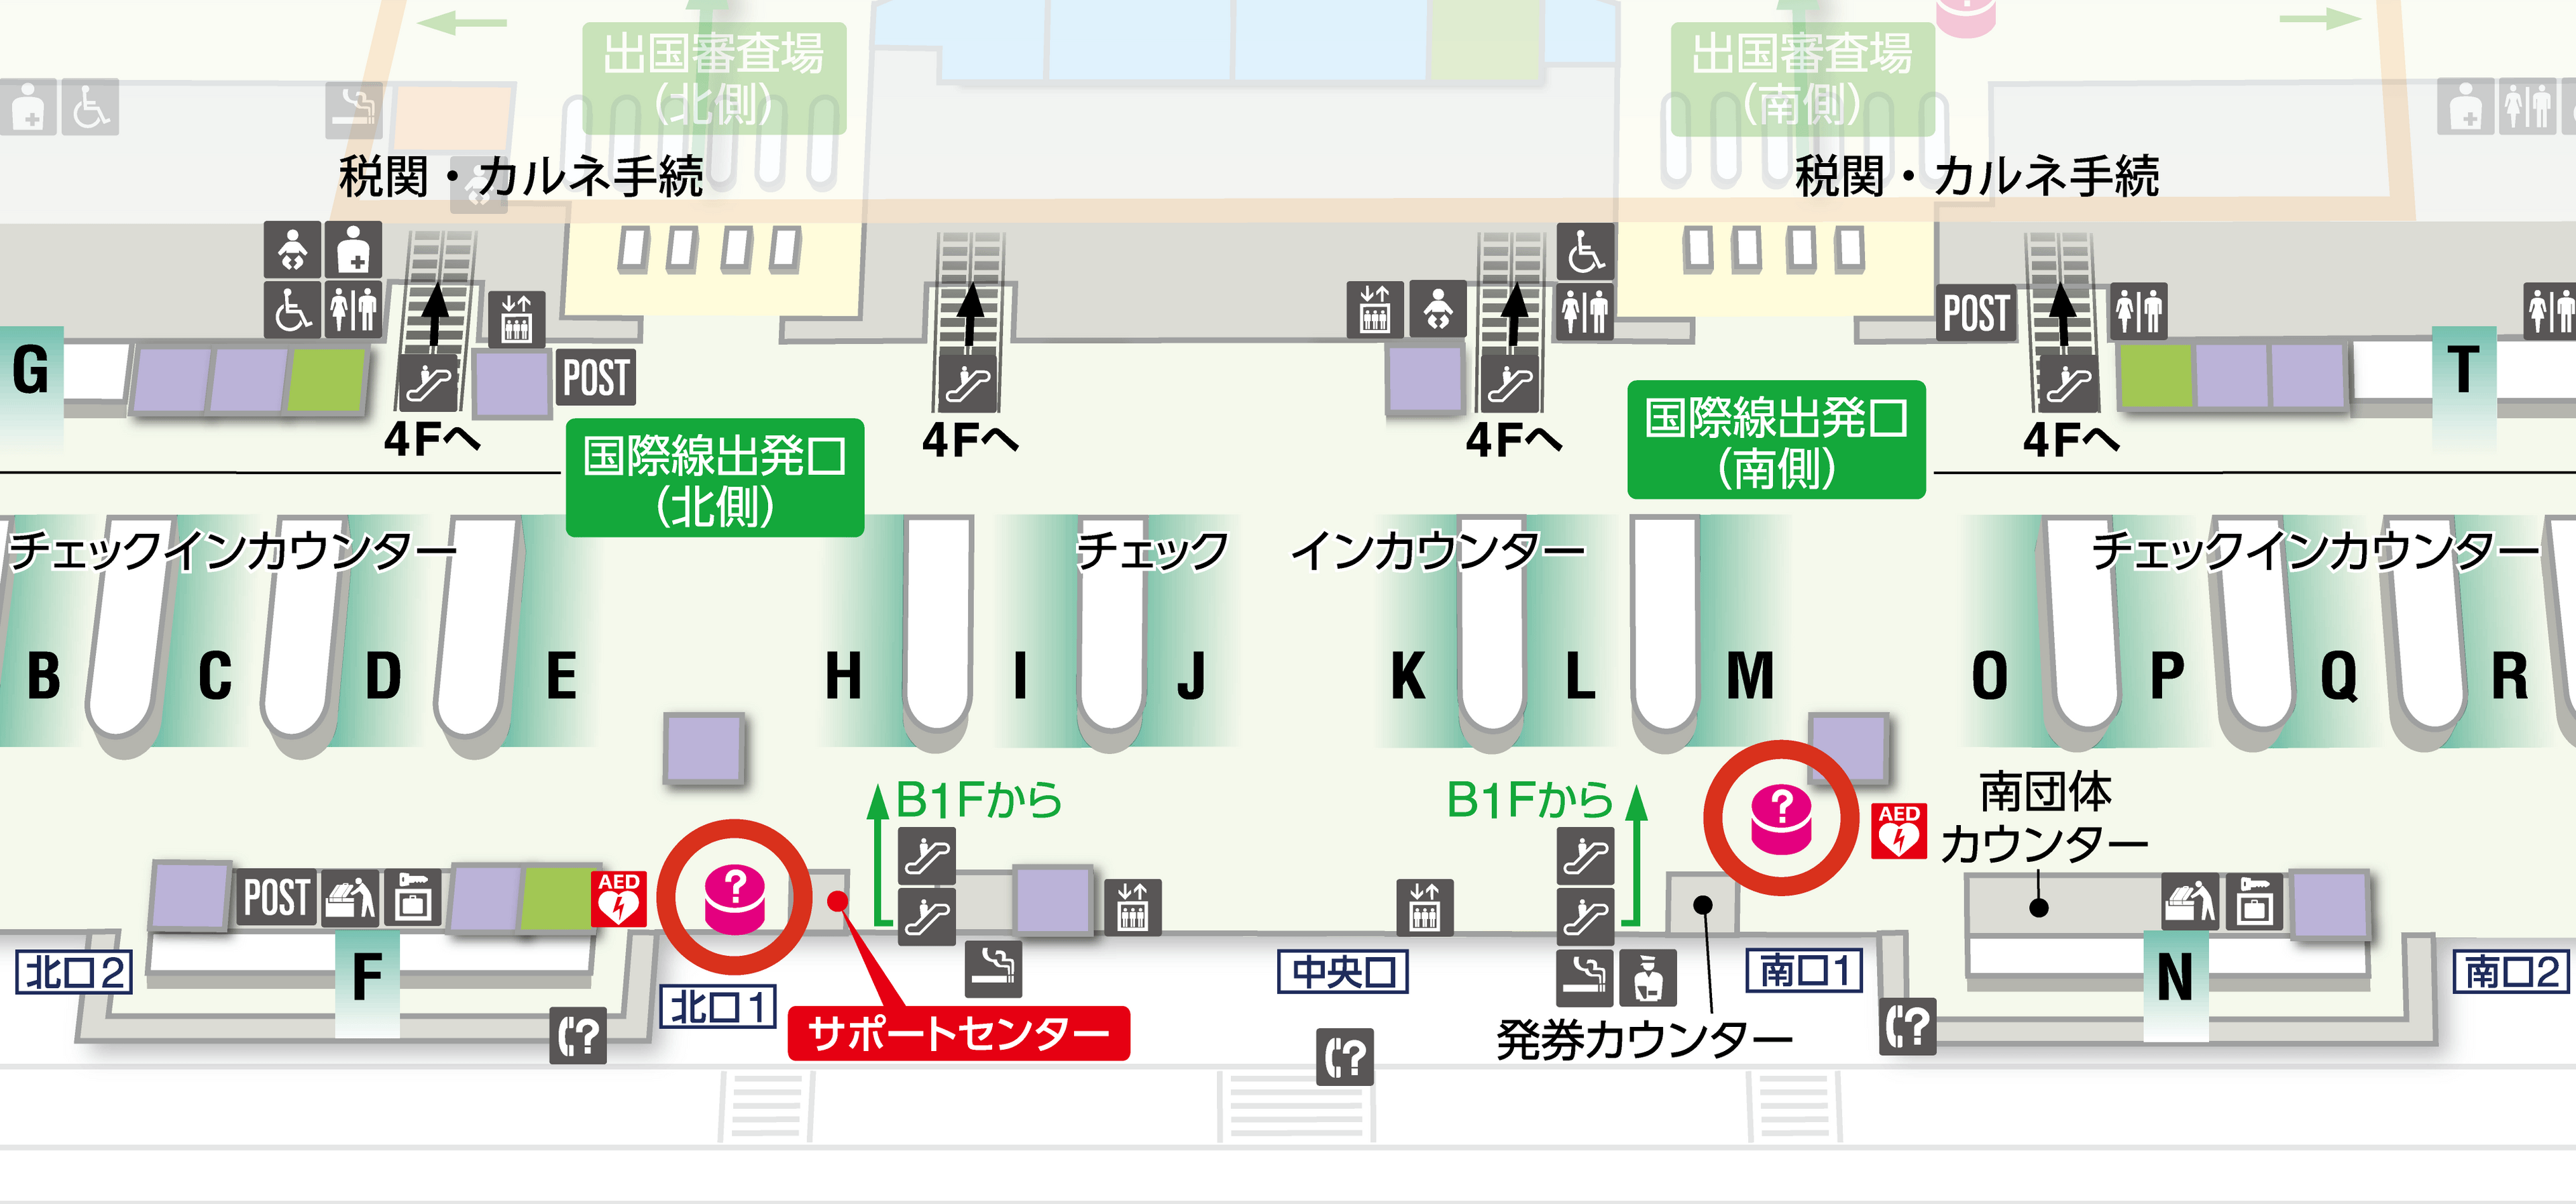 第2ターミナル3F（国際線出発ロビー）フロアマップの図